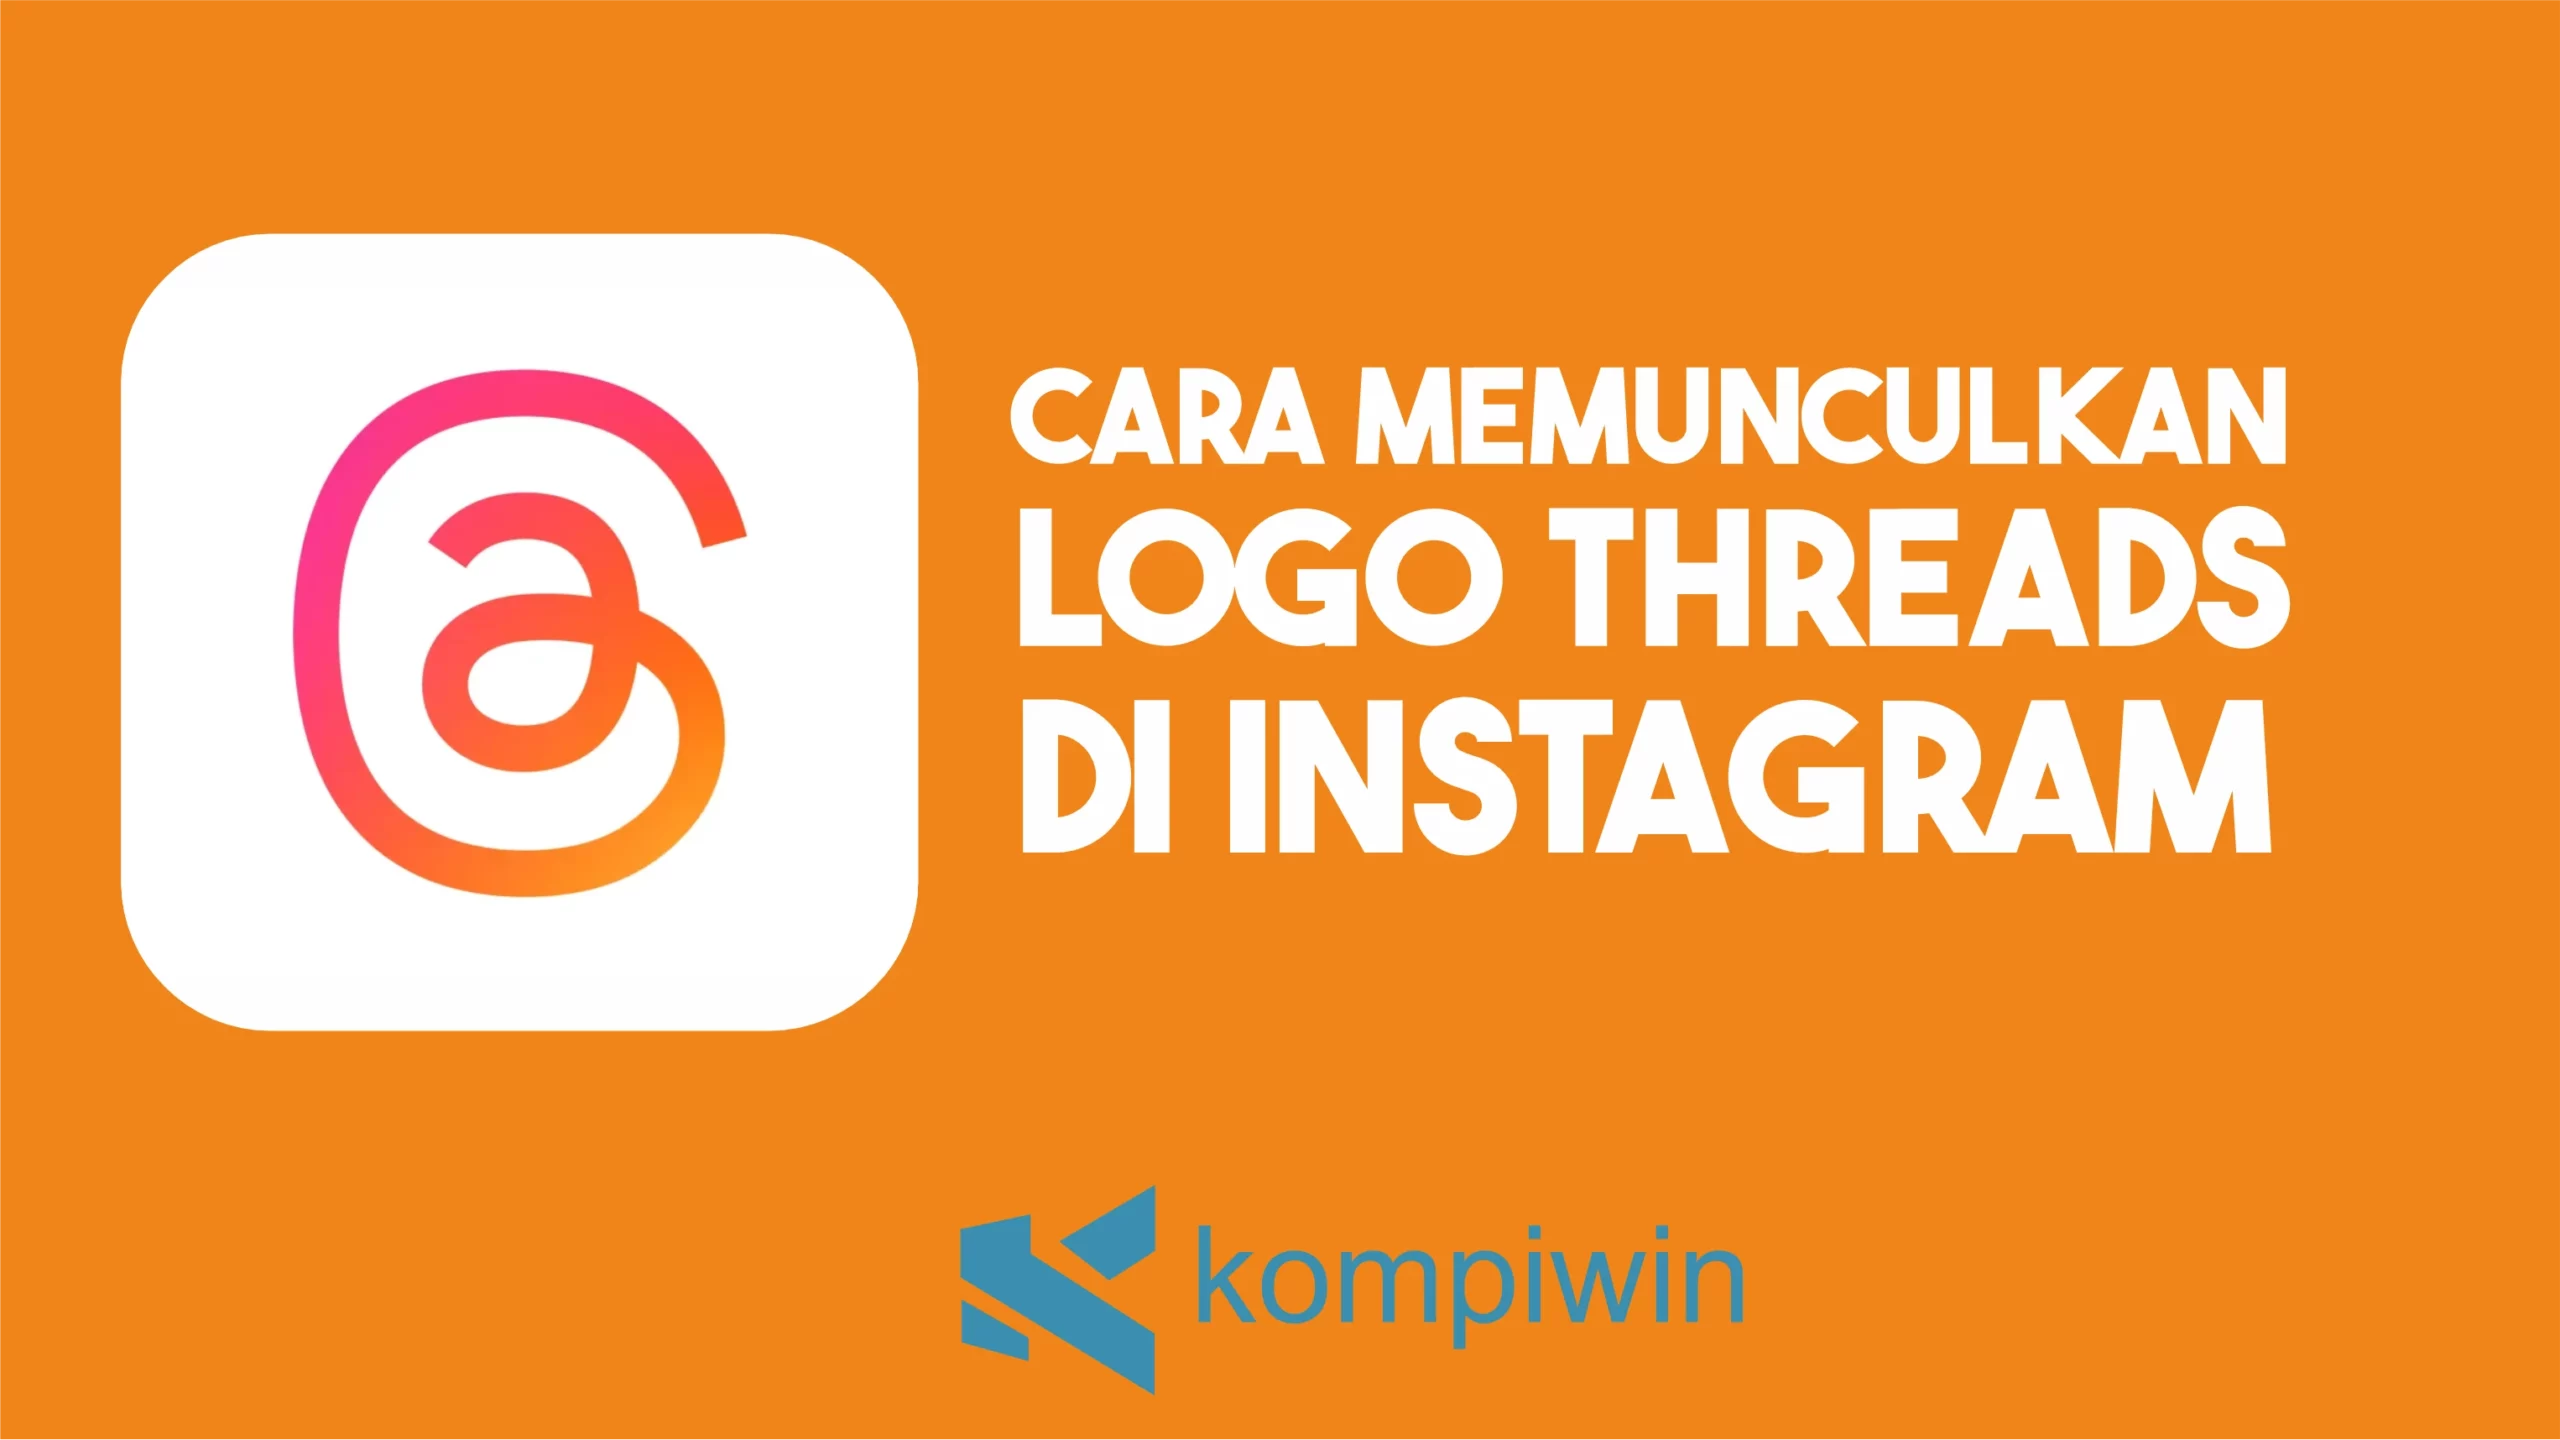 Cara Memunculkan Logo Threads di Instagram